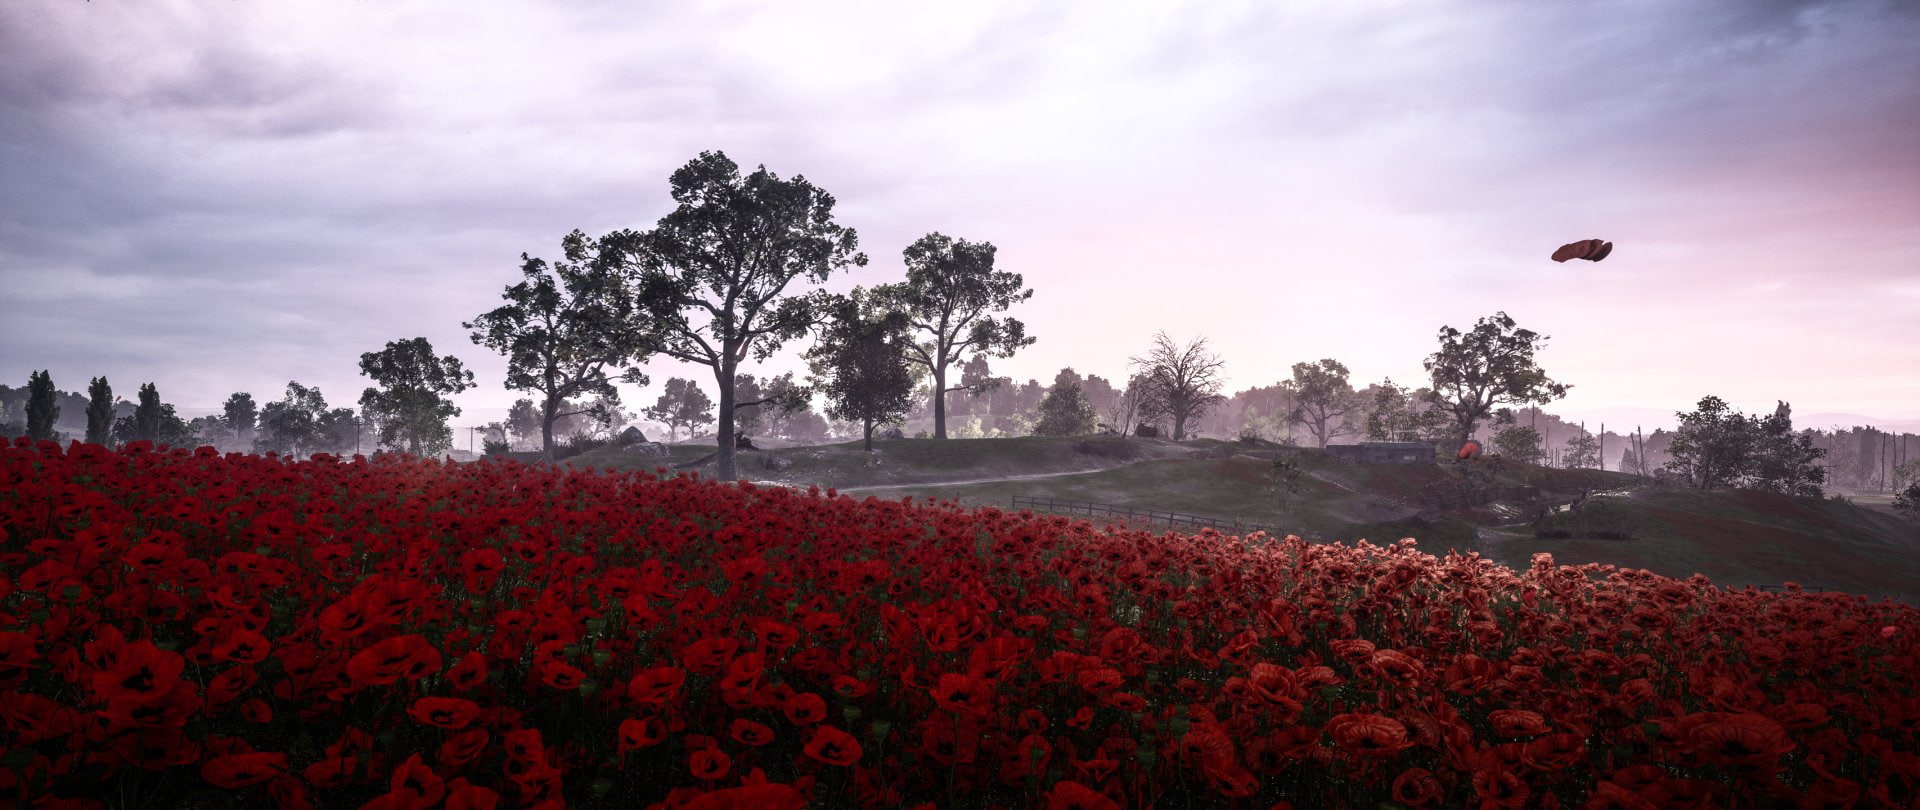 Battlefield, Battlefield 1, Flower, Landscape, Poppy, Red Flower